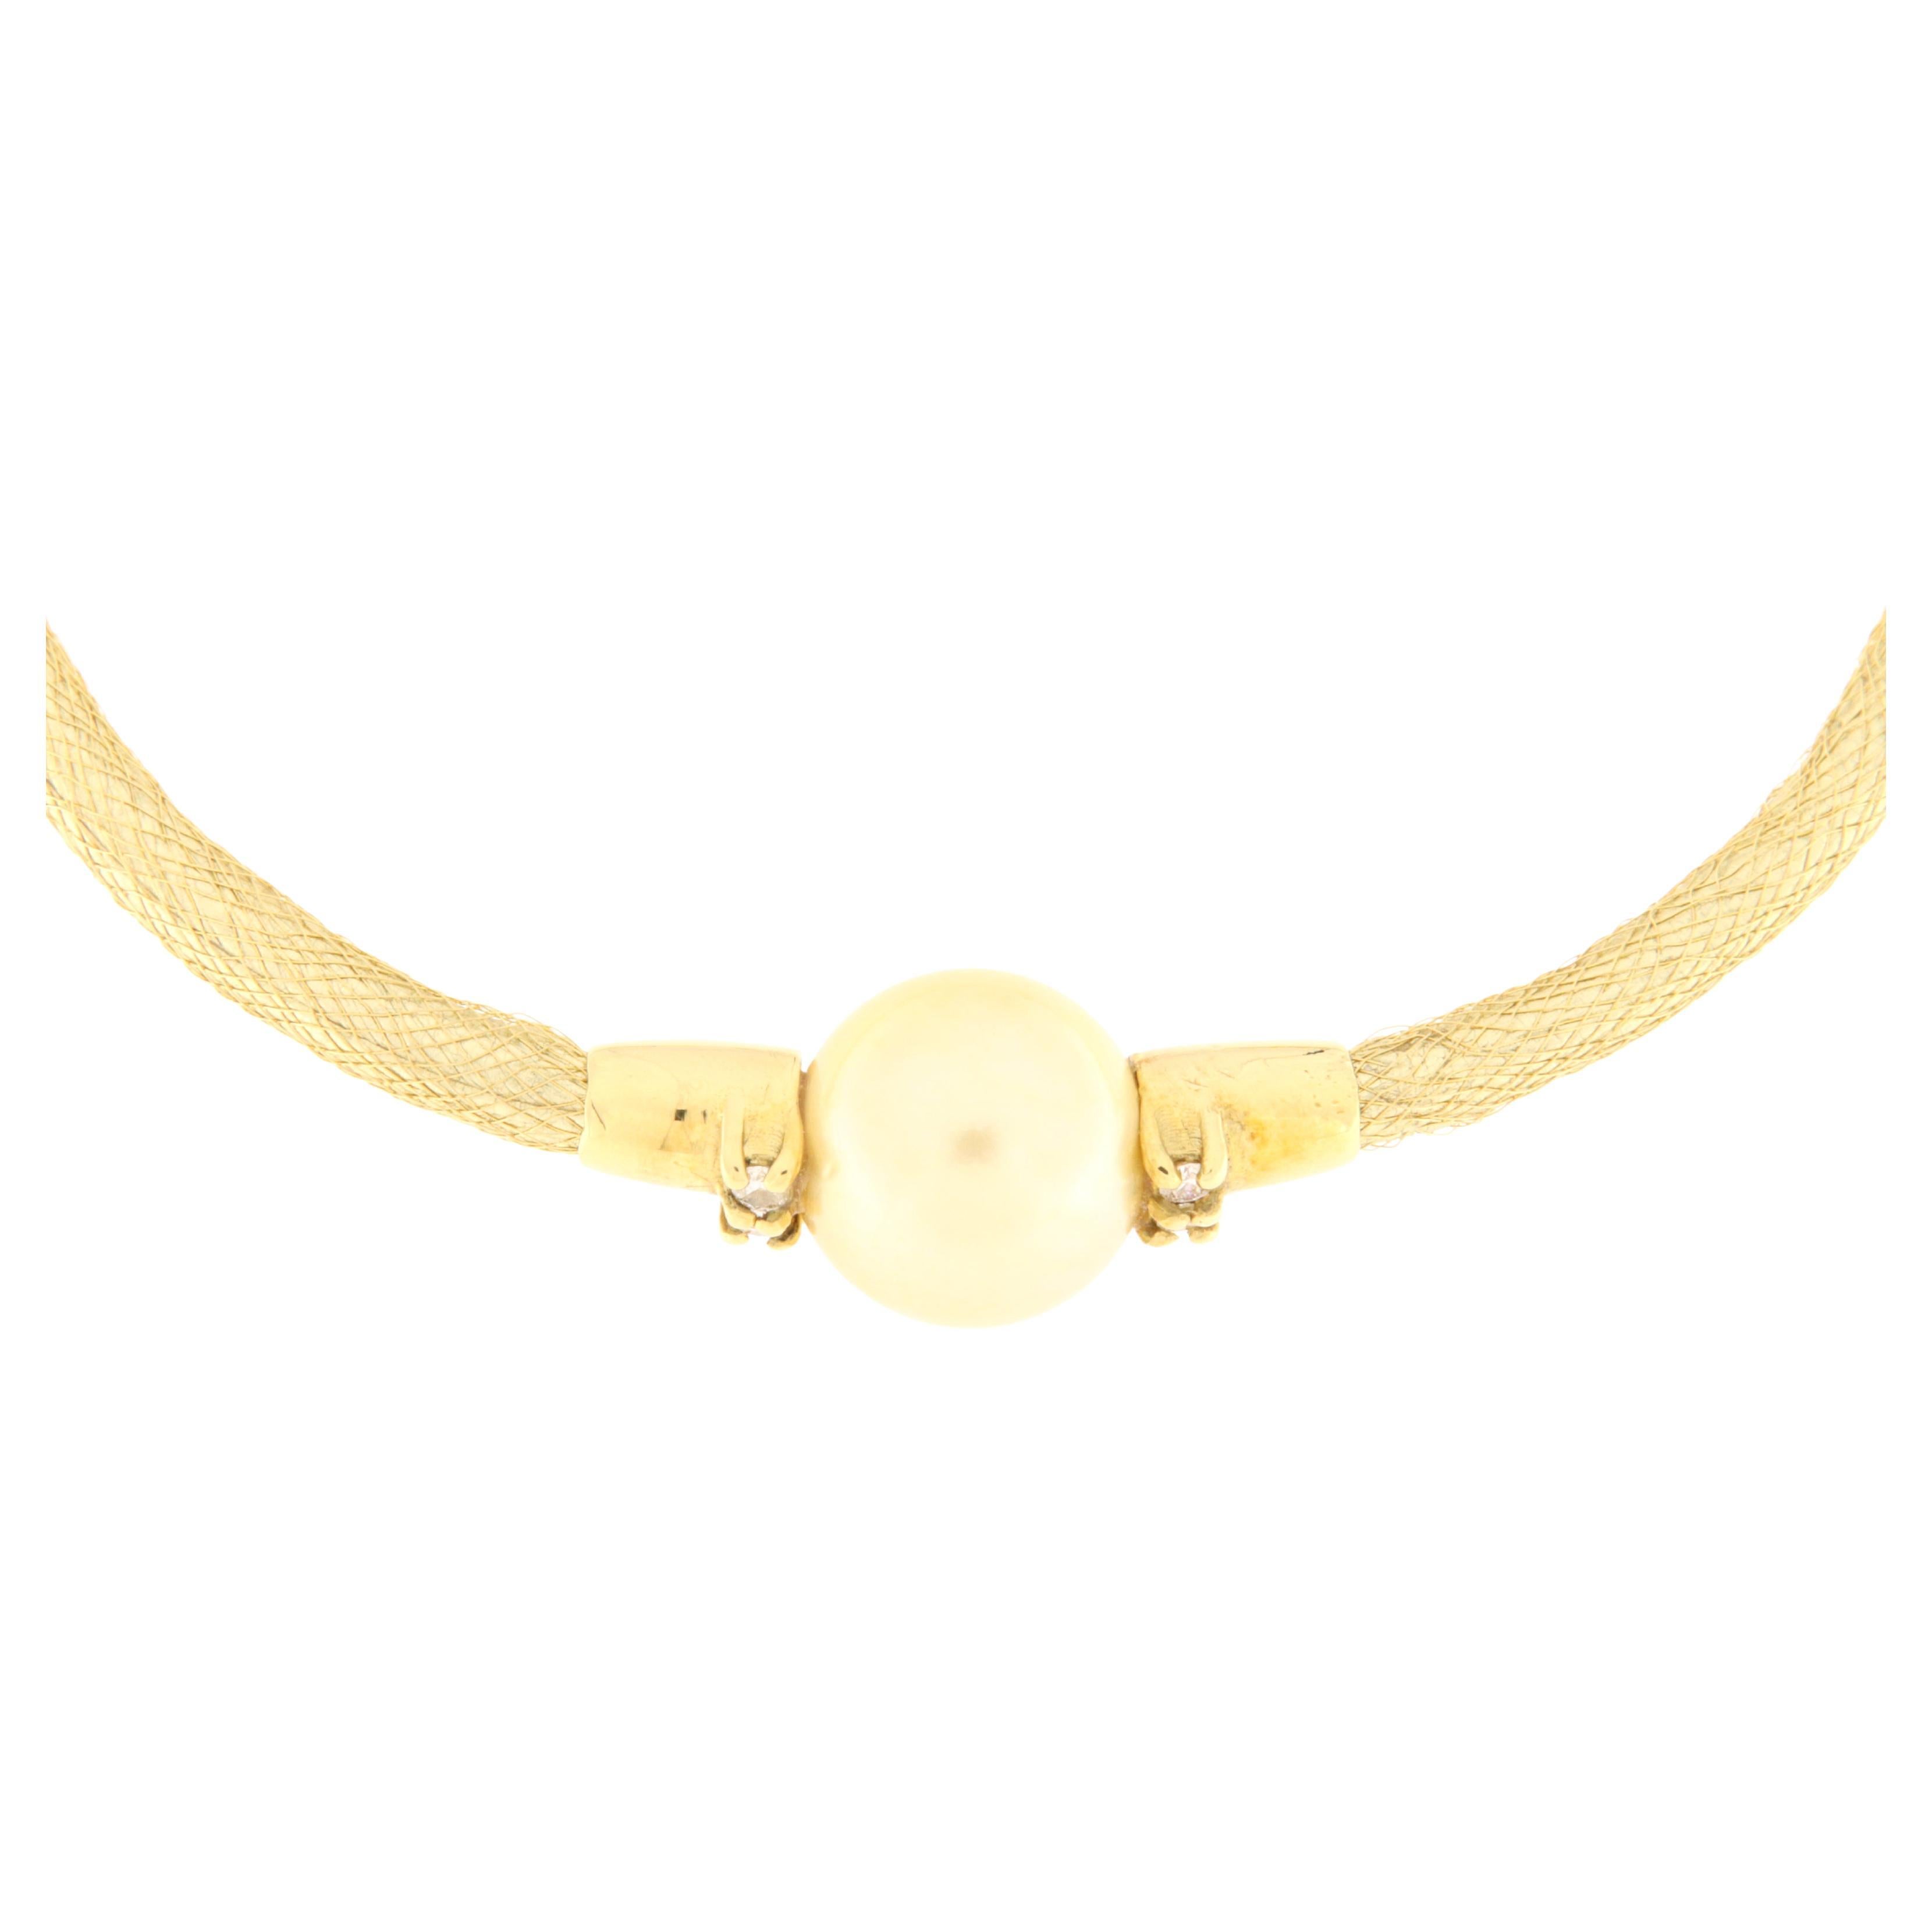 Bracelet semi-rigide composé d'un tissu doré, d'une monture et d'un fermoir en or jaune. Au centre se trouve une magnifique perle d'or ornée de quatre scintillants sur les côtés. Le même modèle est également disponible en or blanc avec une perle